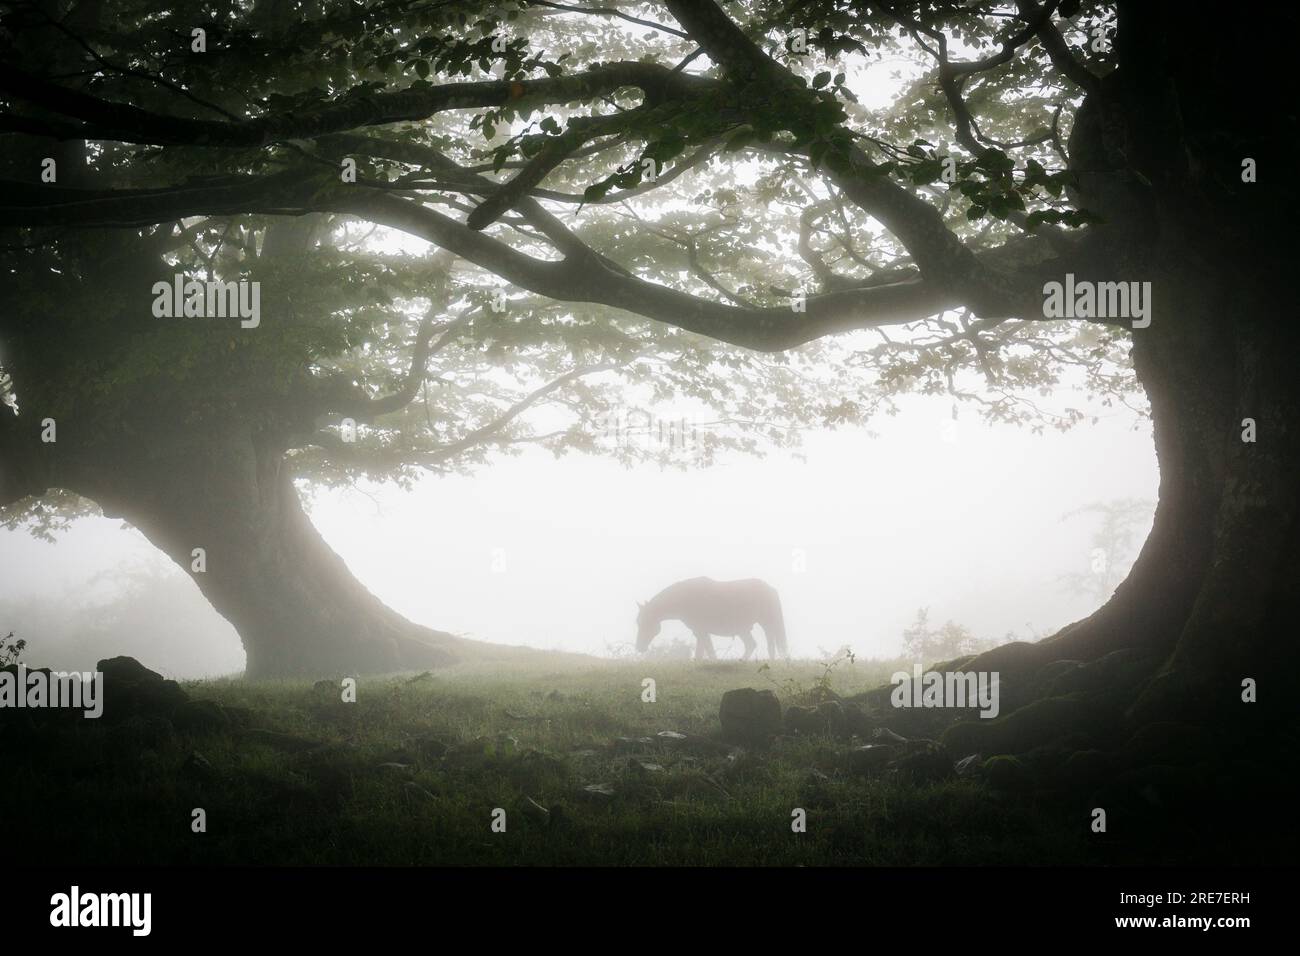 caballo bajo las hayas, fagus Sylvaticus, parque natural Gorbeia,Alava- Vizcaya, Euzkadi, Spain Stock Photo